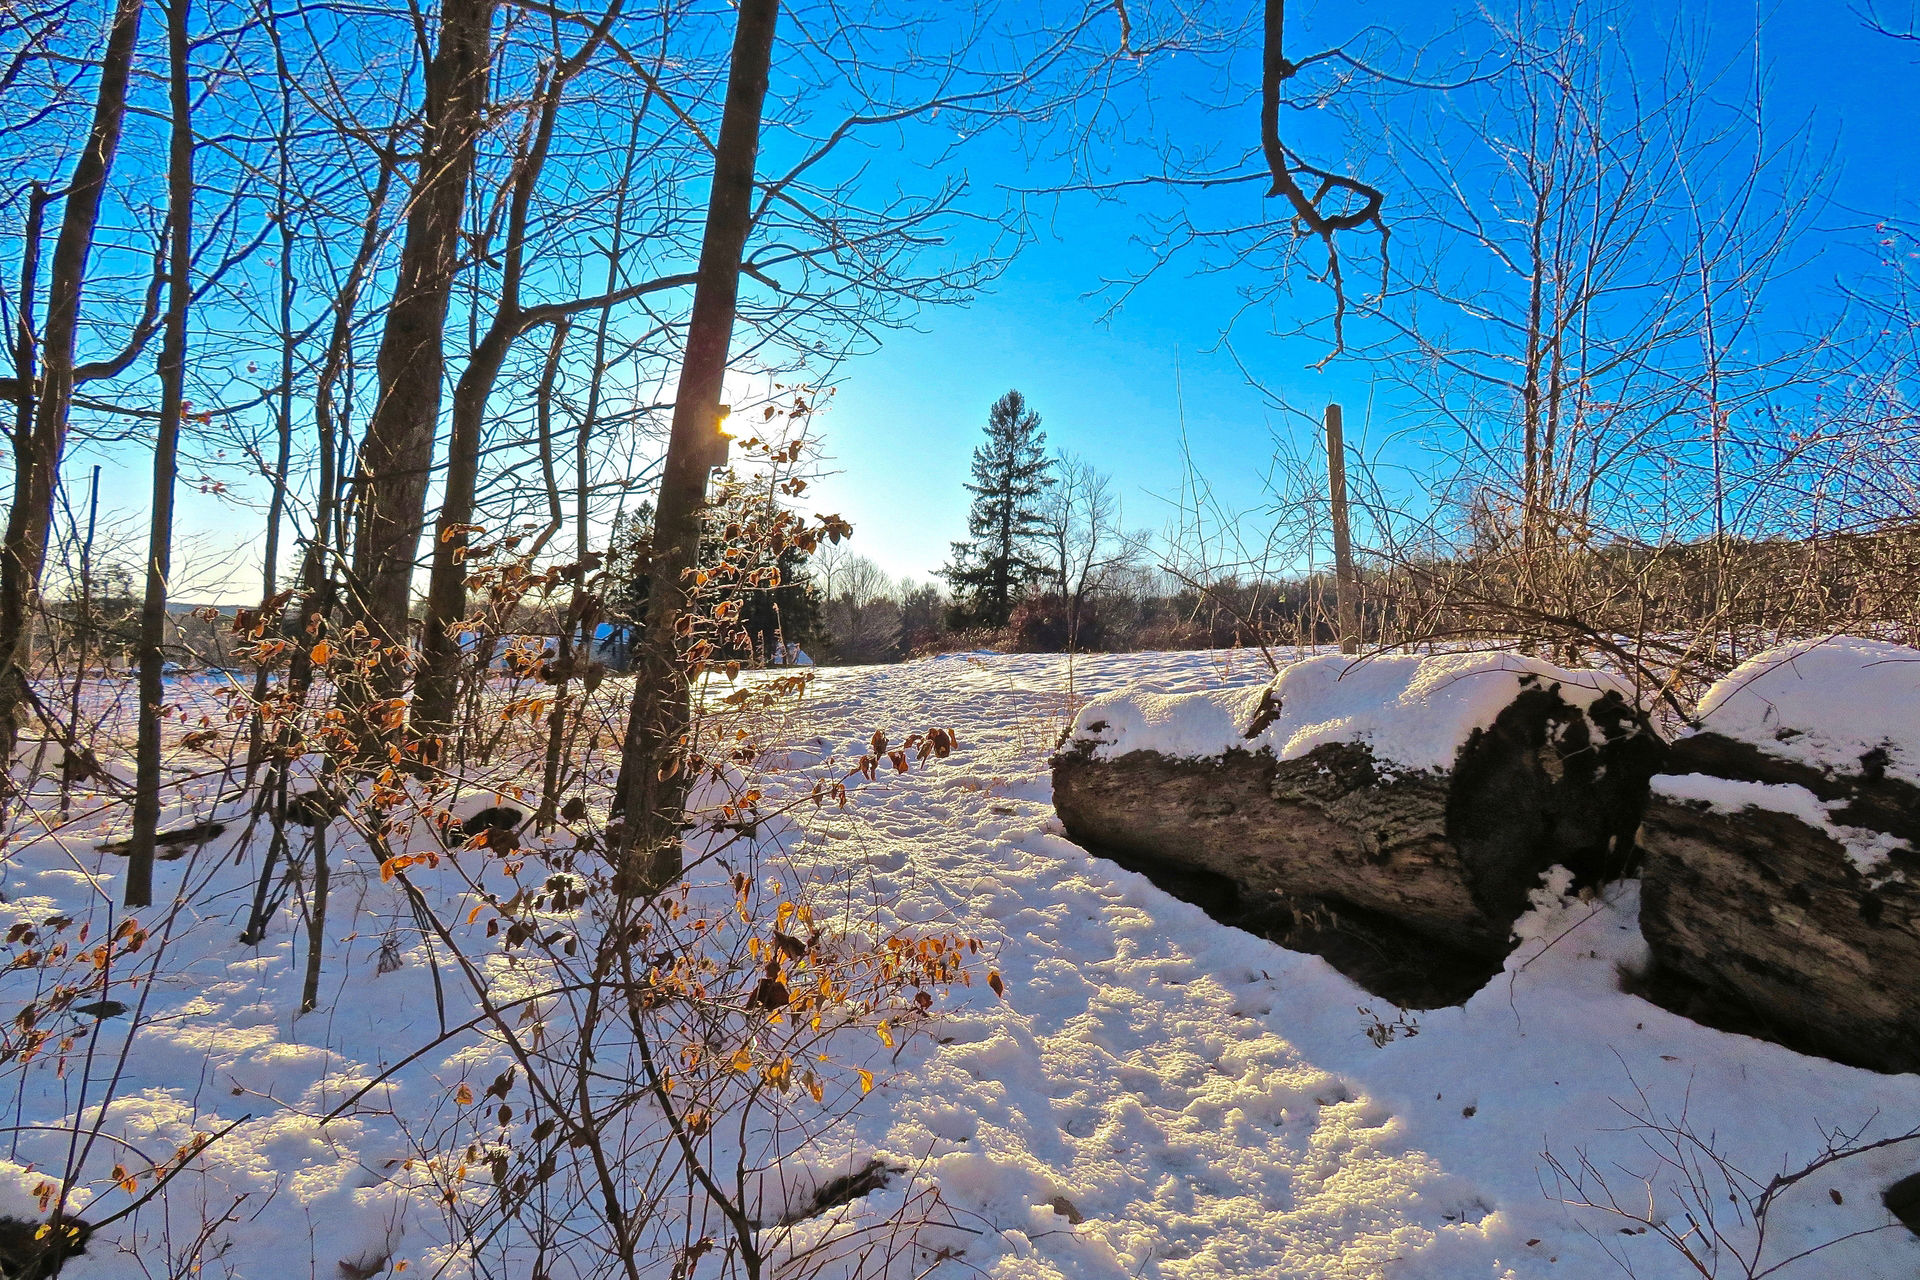 Wachusett Meadow in Winter, snow on ground blue sky